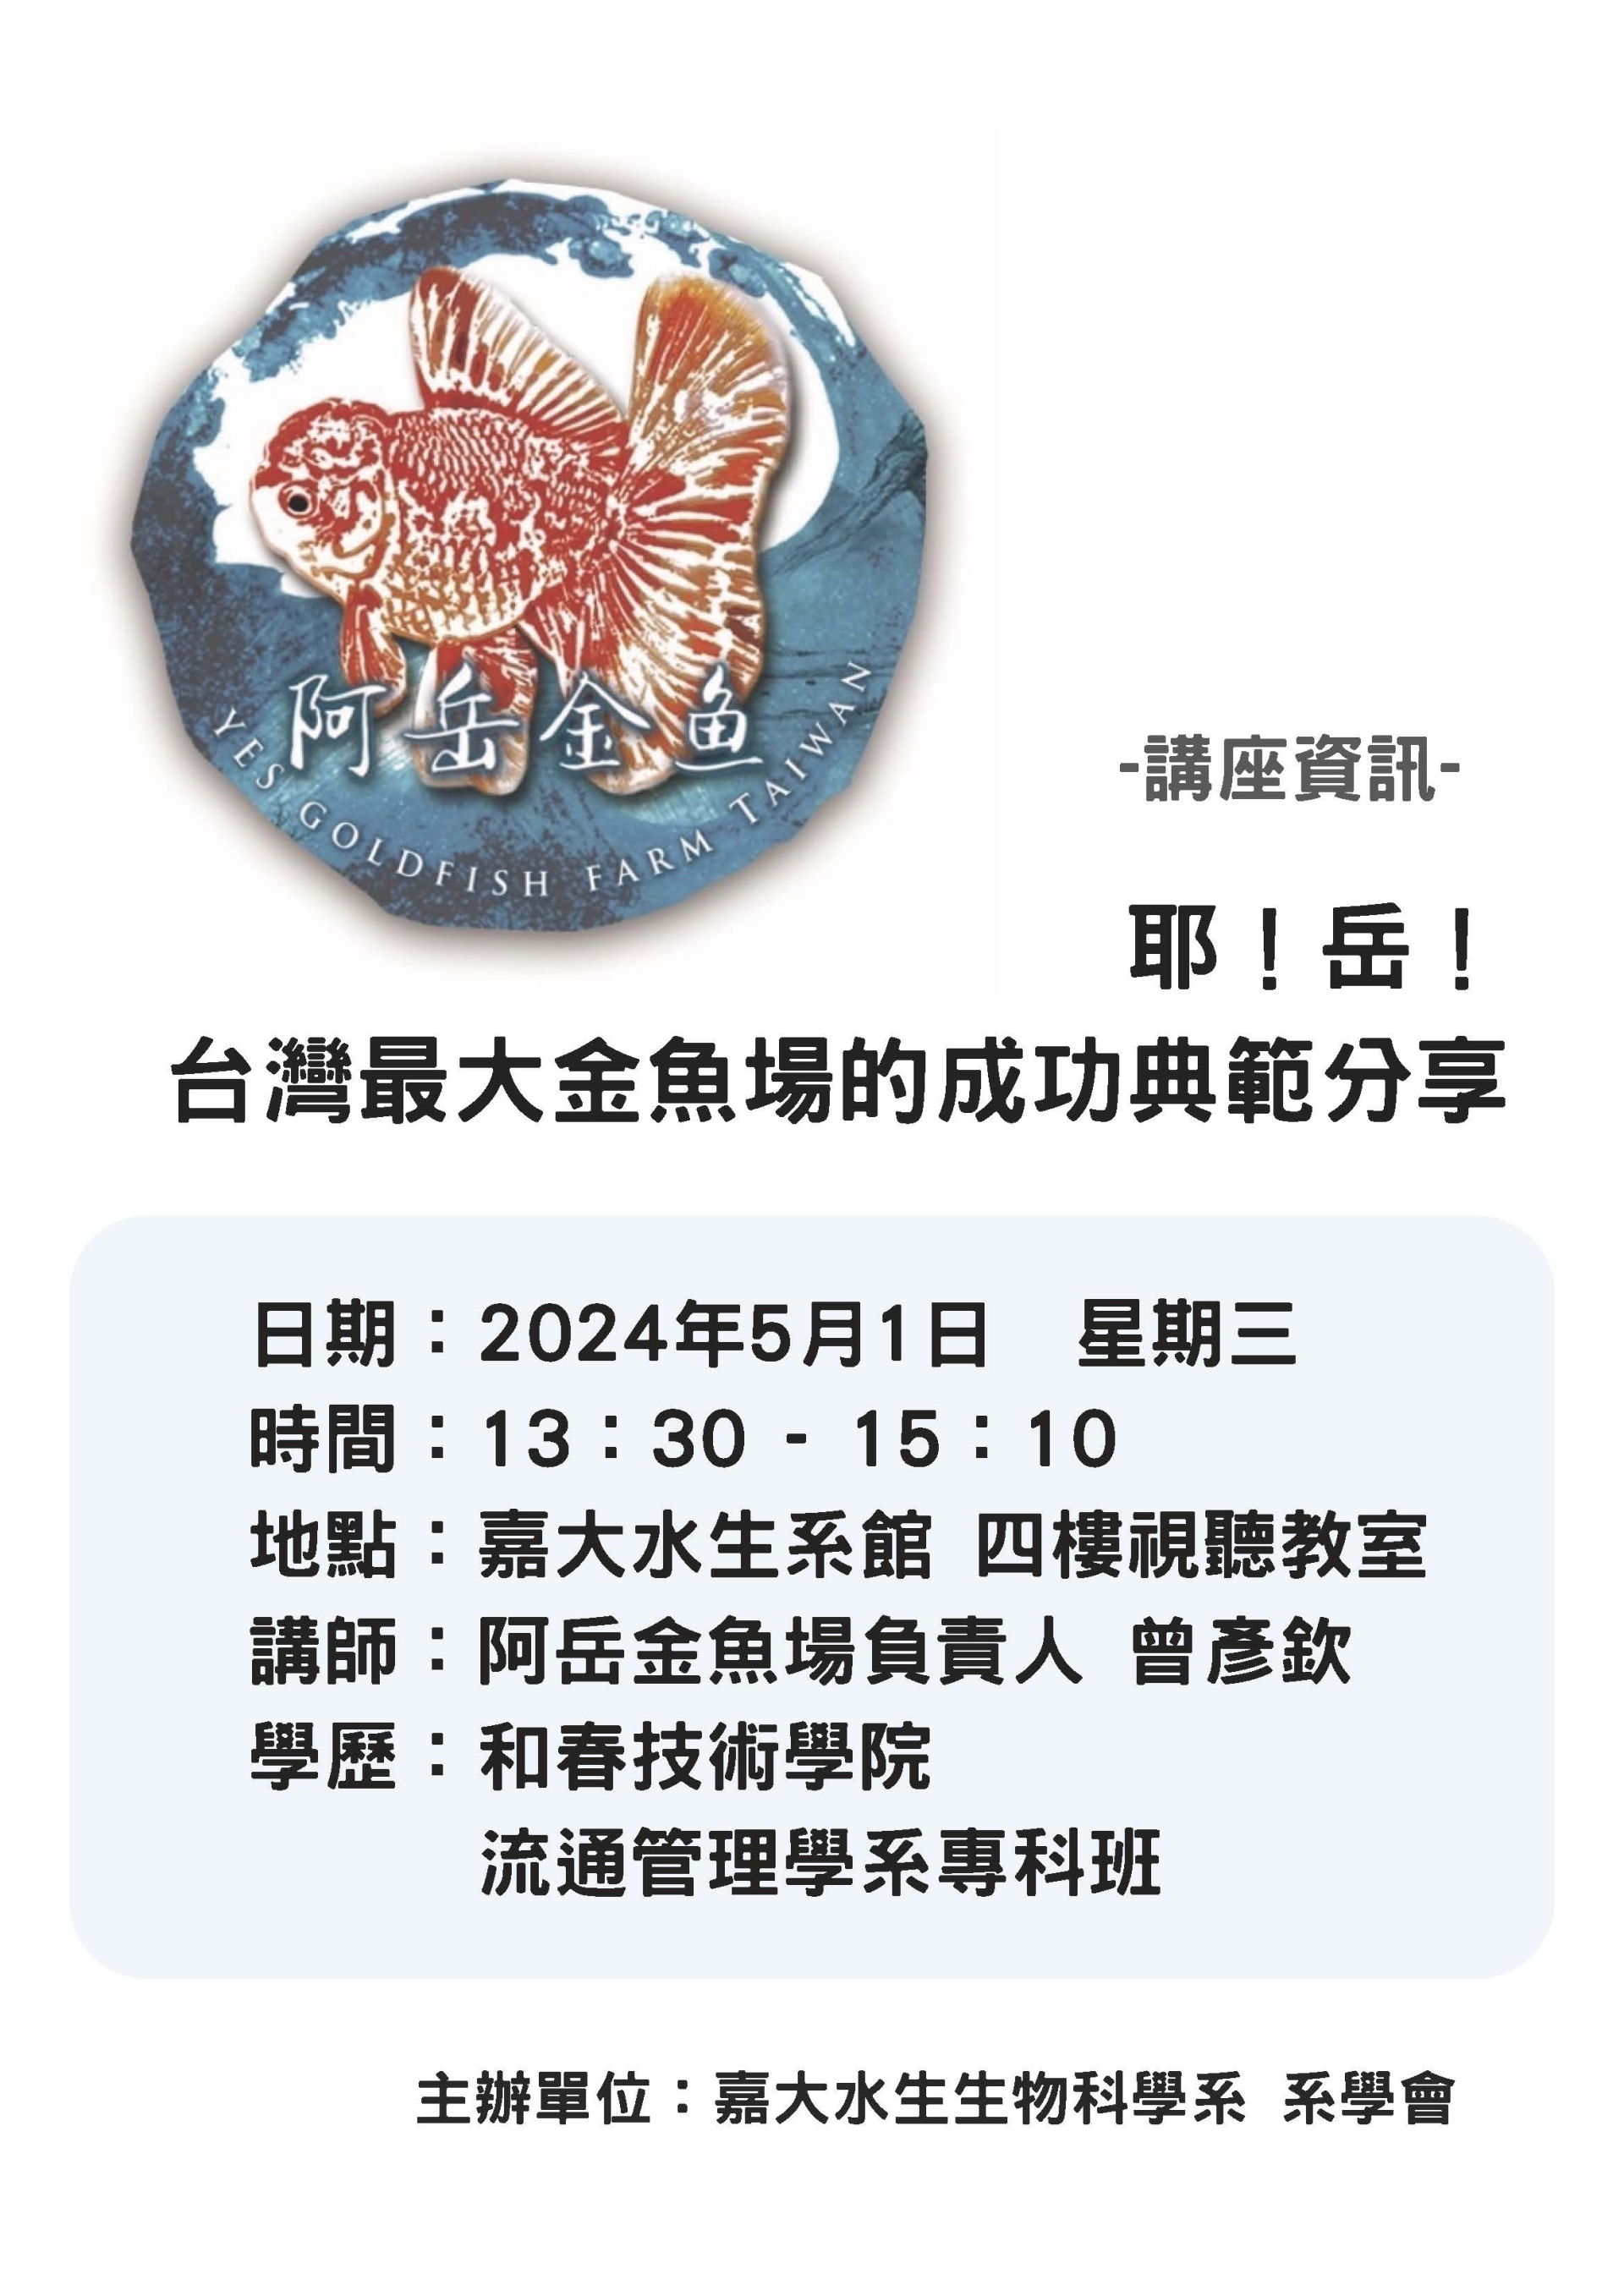 通識教育講座：耶!岳!台灣最大金魚養殖場的成功典範